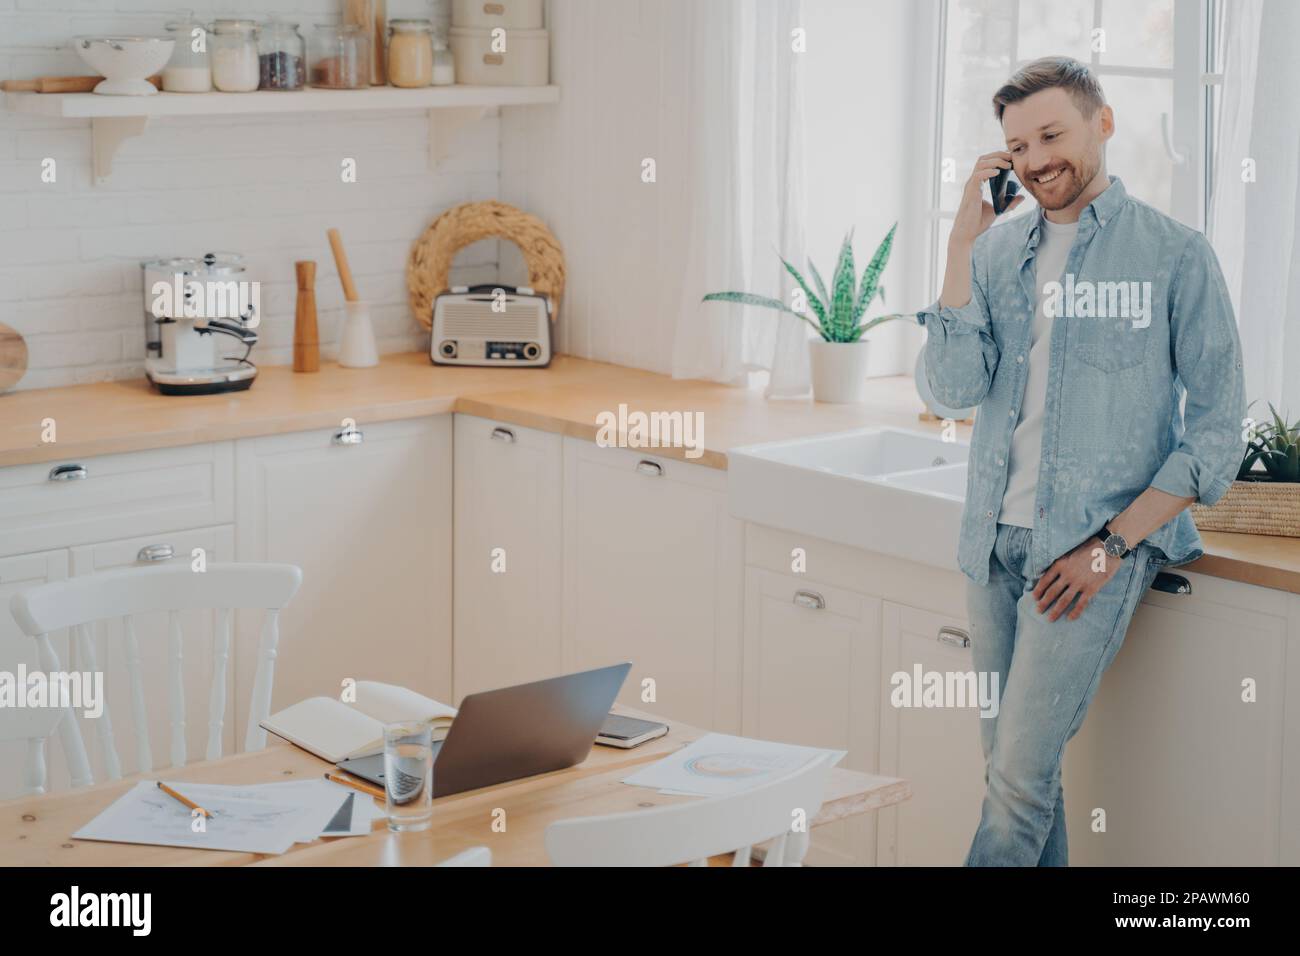 Ein glücklicher junger Kaukasier, der ein Handy in der Hand hält, während er sich mit dem Kunden unterhält, in der modernen Küche steht und ein gutes Geschäftsgespräch genießt Stockfoto